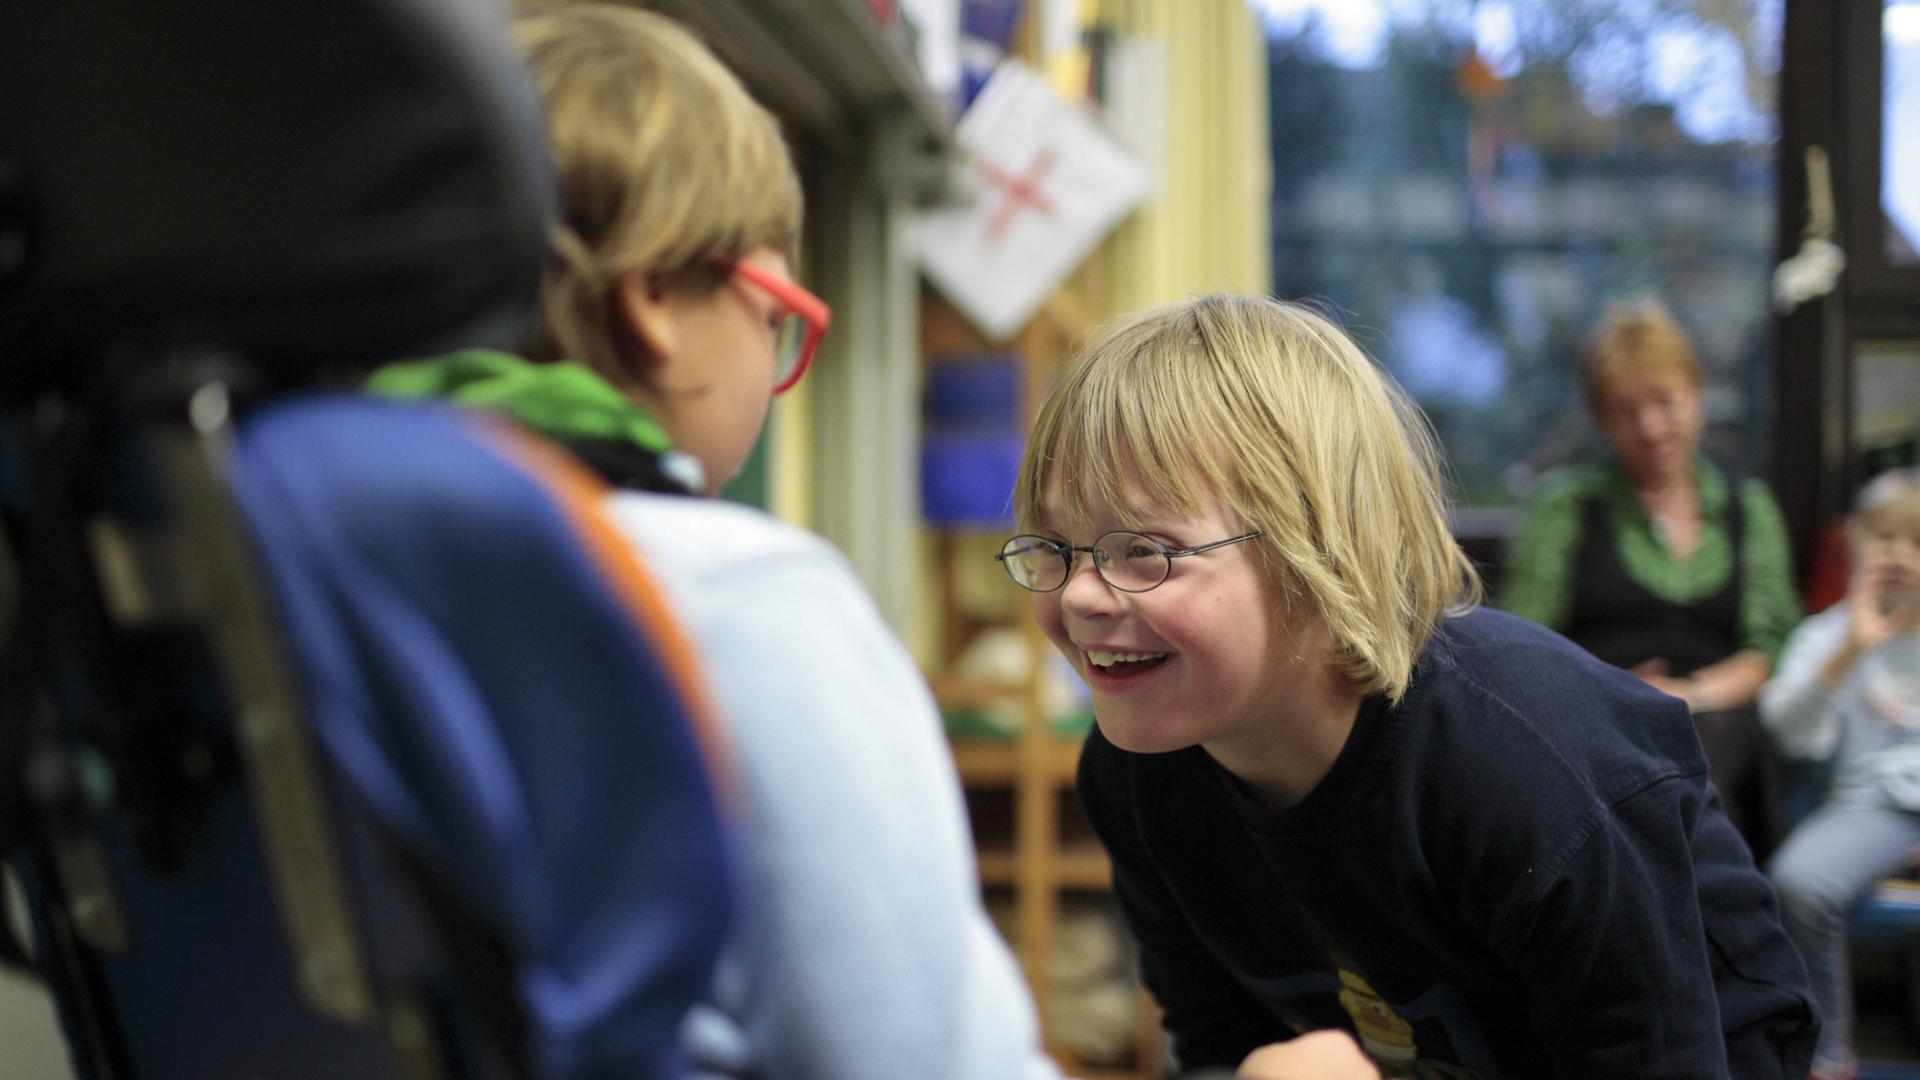 Ein Kind mit Down-Syndrom beugt sich lachend zu einem Kind im Roll-Stuhl vor. 